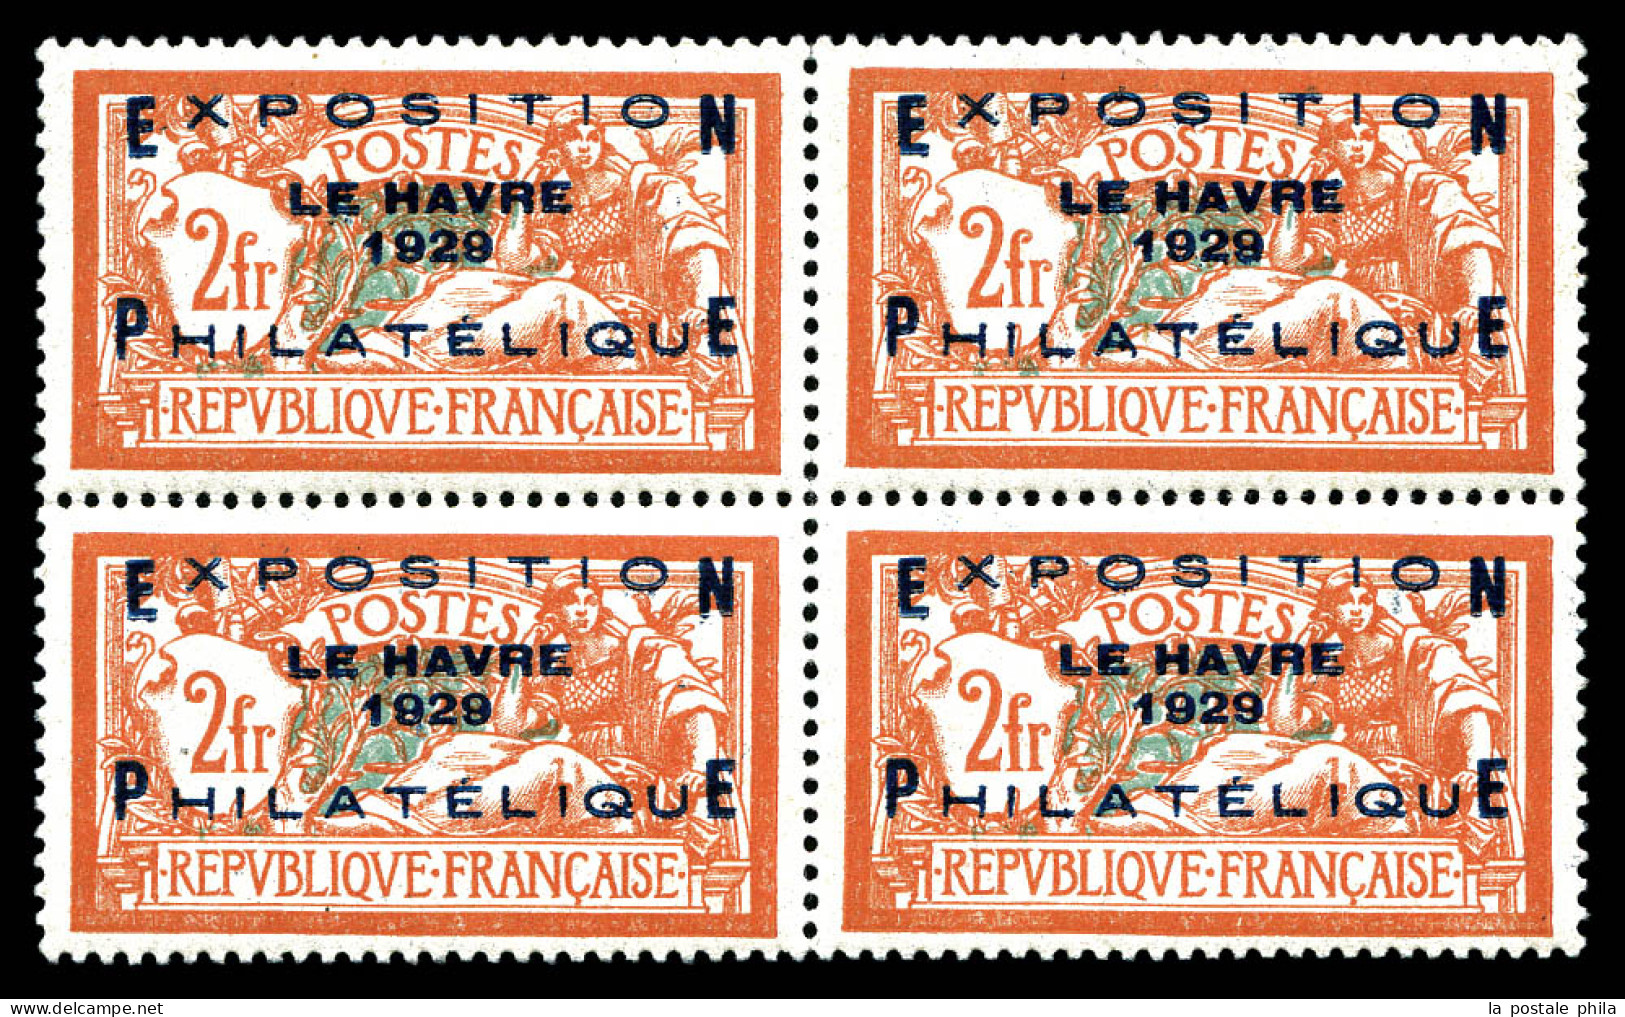 ** N°257A, Exposition Du Havre 1929 En Bloc De Quatre, Fraîcheur Postale, Très Bon Centrage. SUP. R.R. (certificat)  Qua - Nuevos